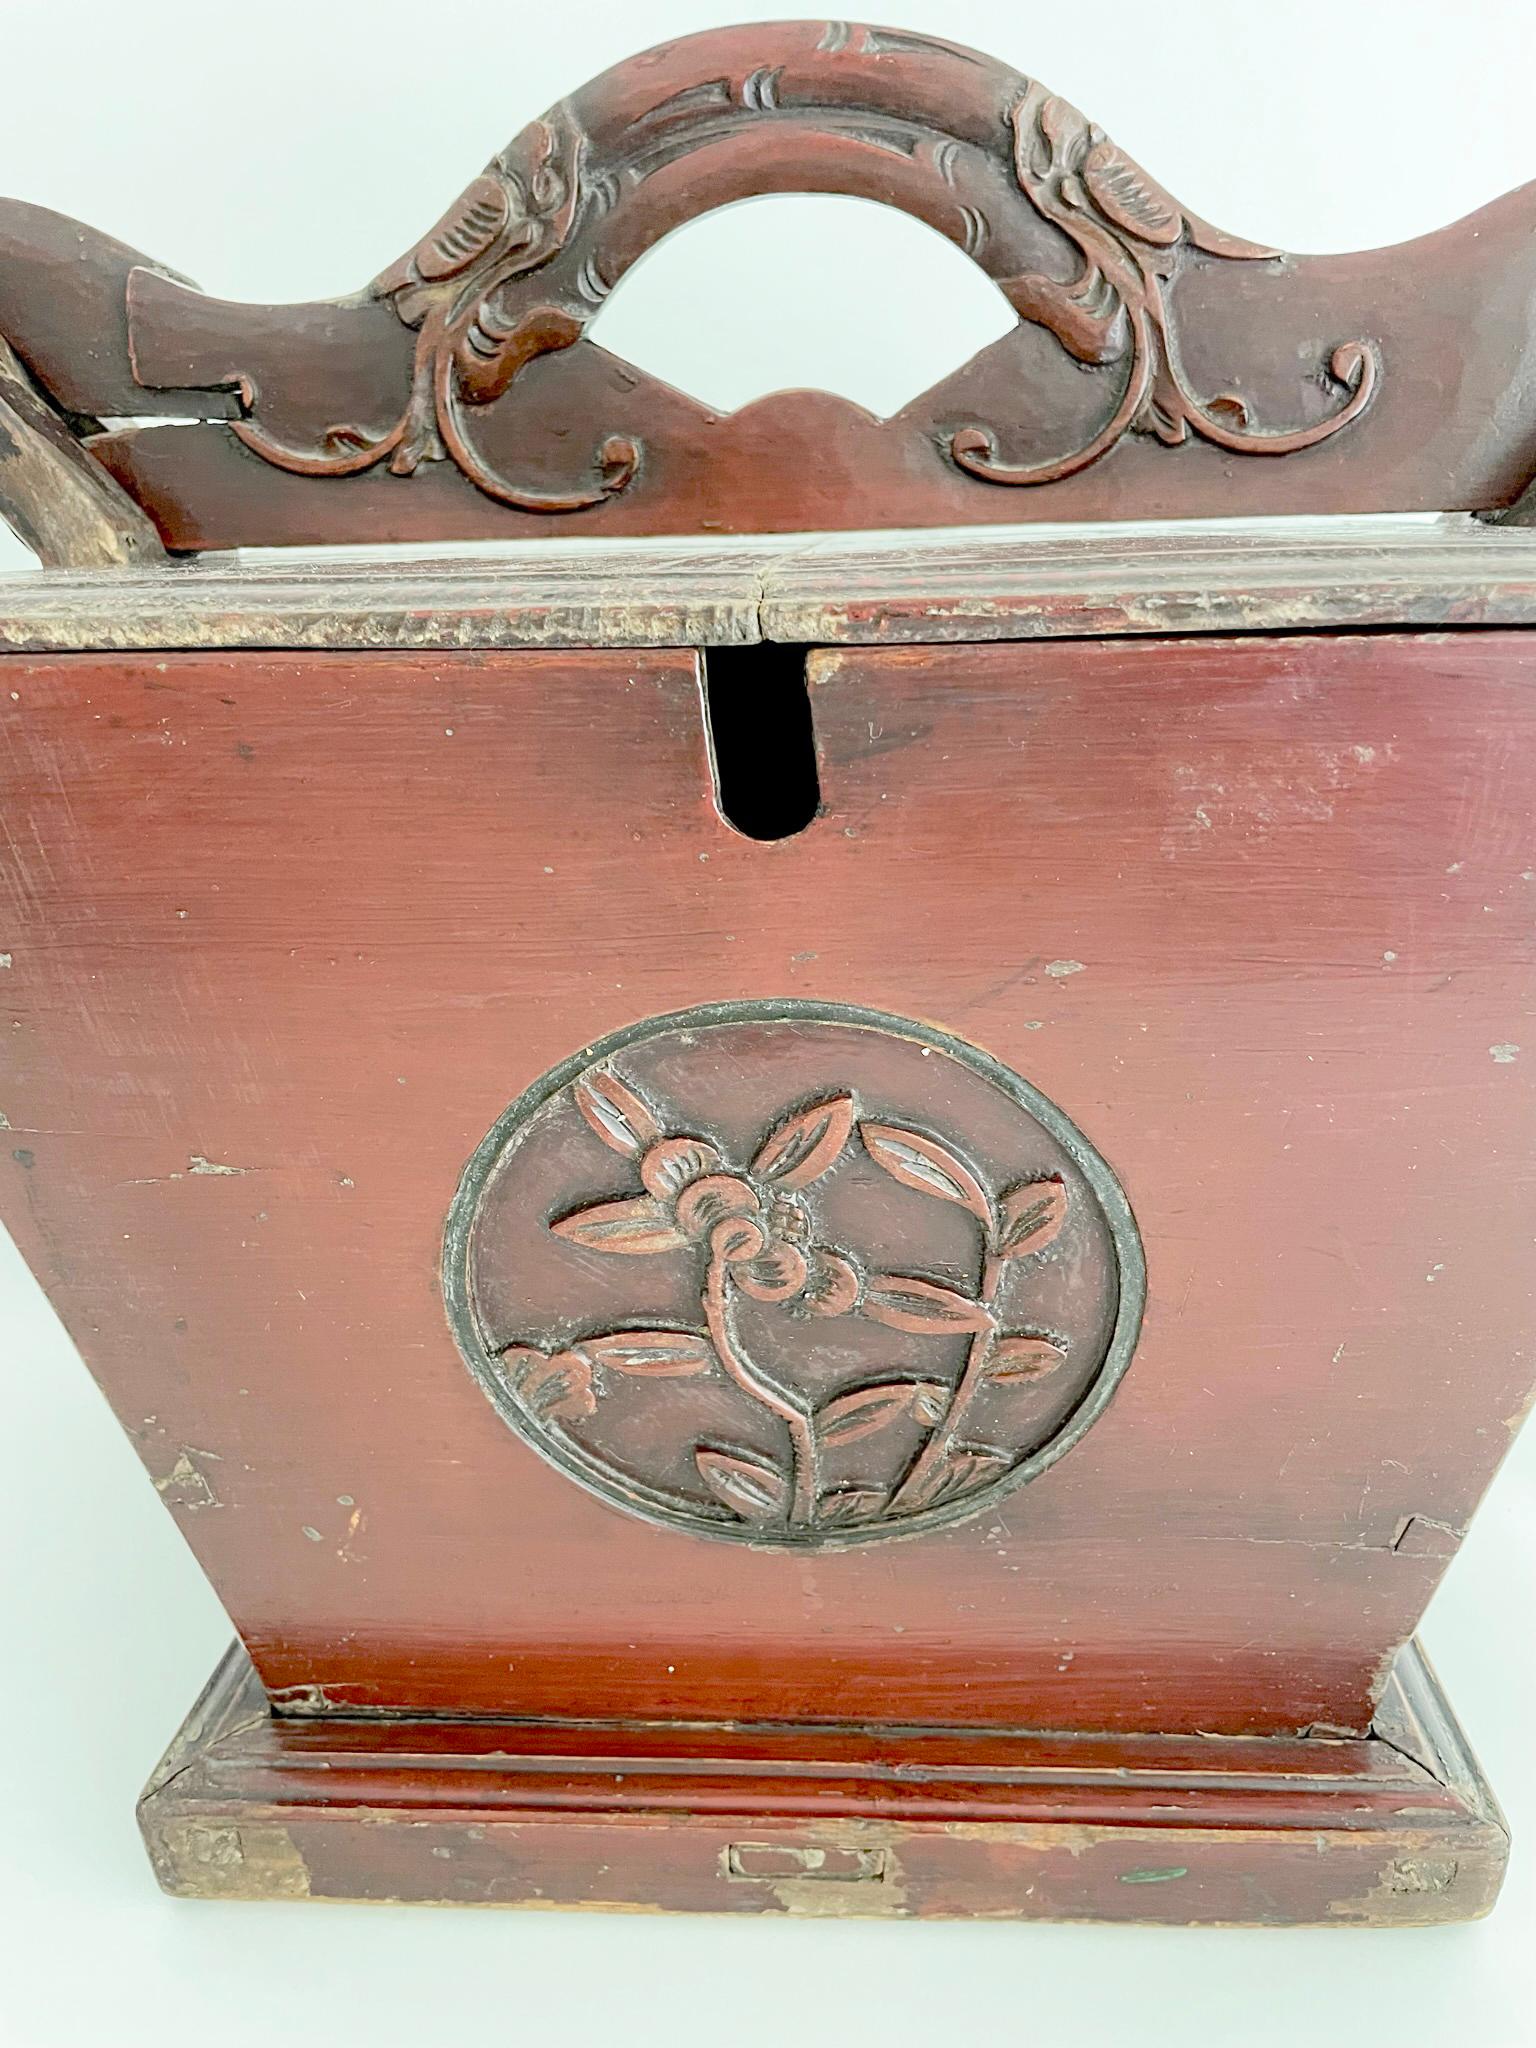 Magnifique boîte à thé de la dynastie Qing en bois d'Elmwood (yumu), sculptée de motifs floraux et recouverte d'une laque couleur sang-de-bœuf. La grande taille est très habituelle et a été utilisée dans un grand complexe familial. Le porte-théière